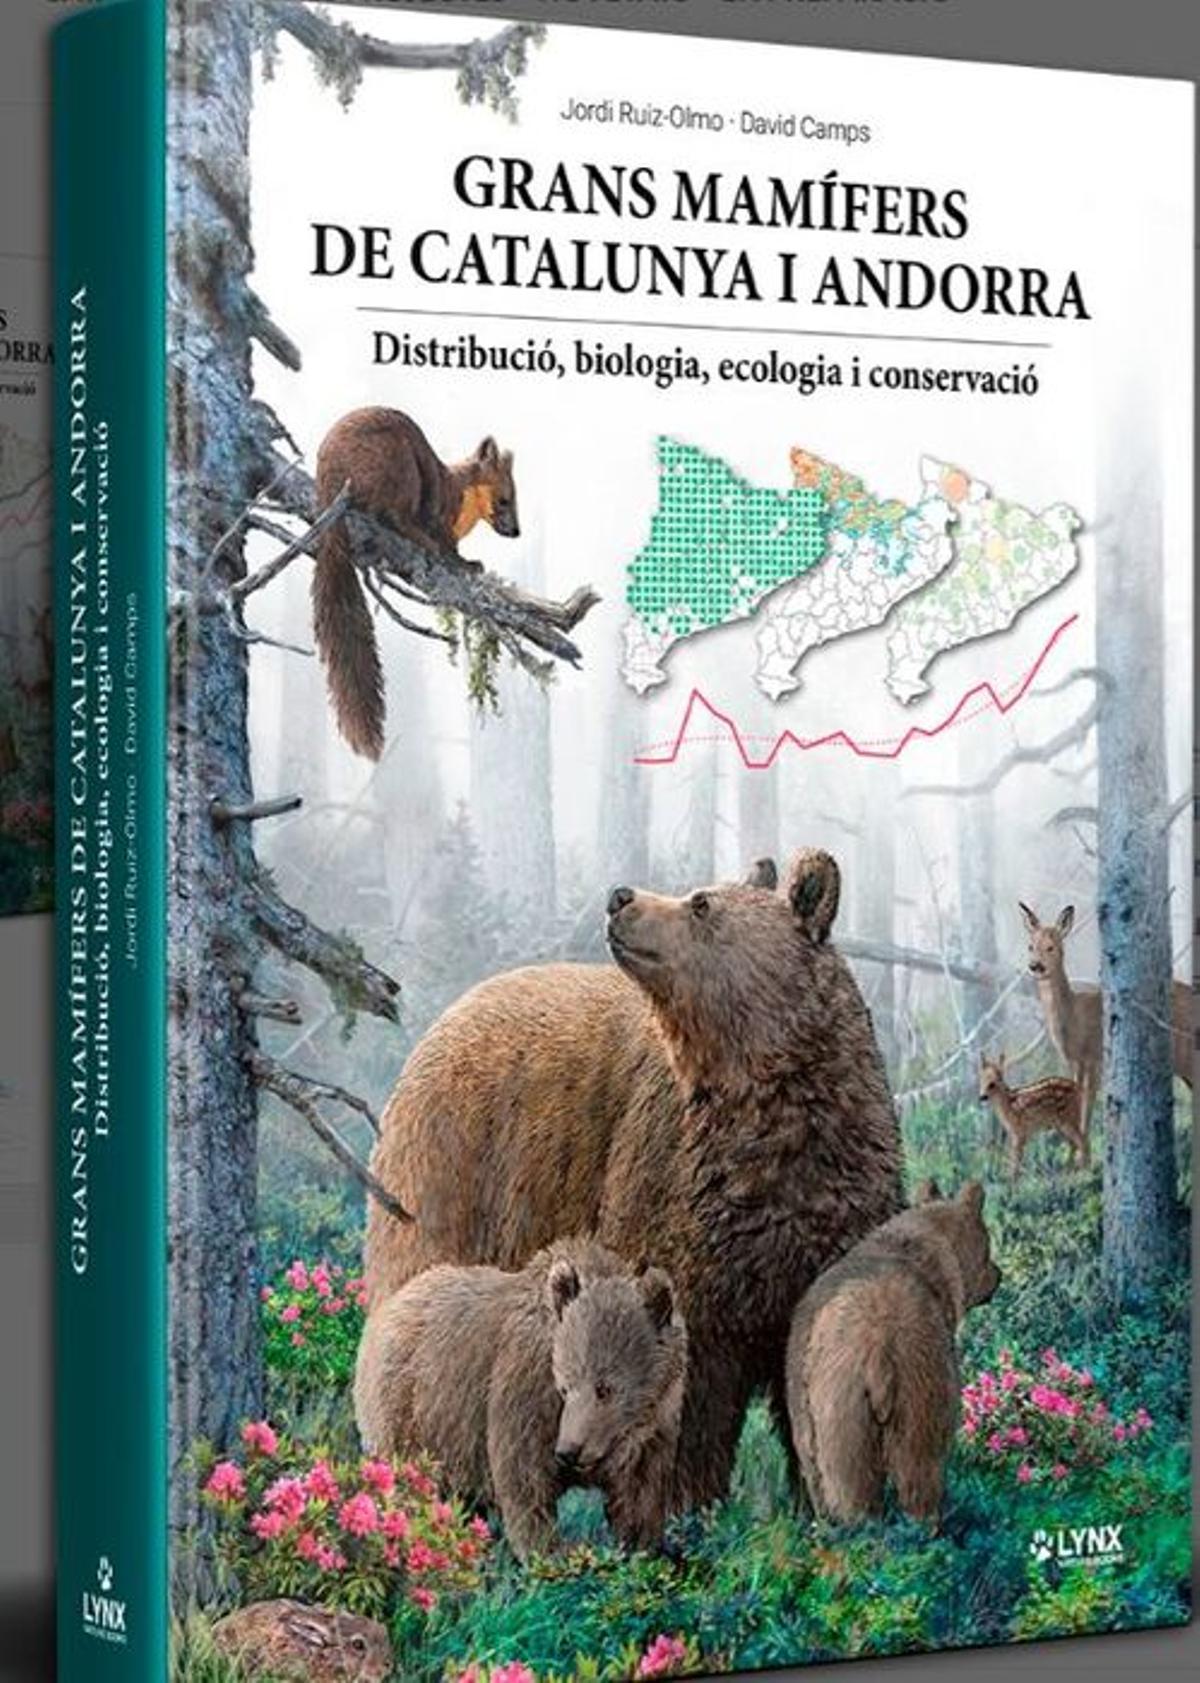 Portada del libro 'Grans mamífers de Catalunya i Andorra'.